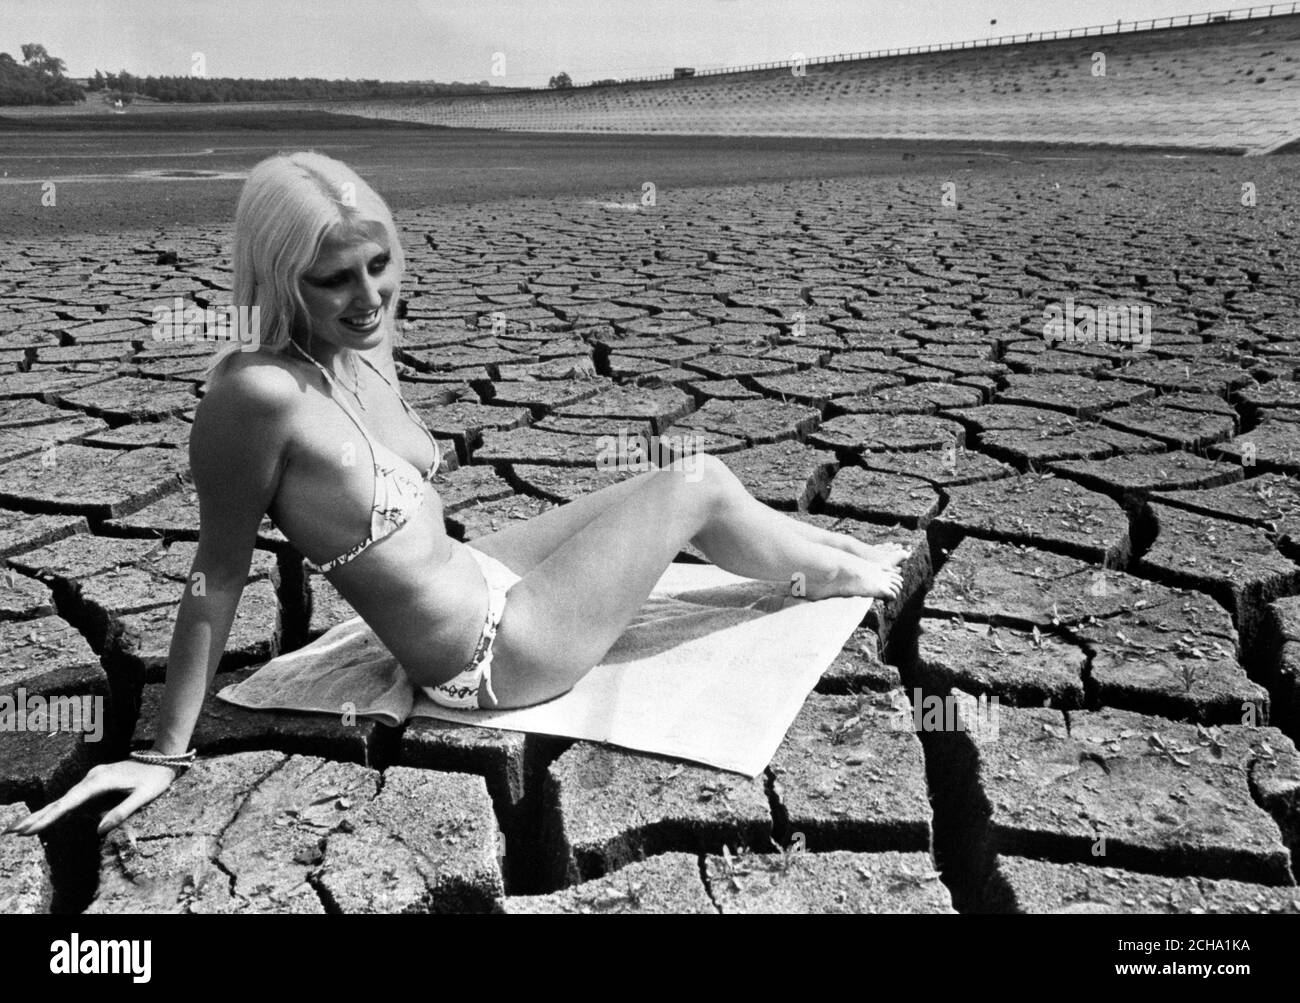 L'abbronzarsi nella siccità che ha portato problemi di approvvigionamento idrico in Gran Bretagna è il modello Cerica di 19 anni. Ha donato un bikini e goduto il sole nel bacino asciutto-in su di Pitsford Reservoir nel Northamptonshire. Foto Stock